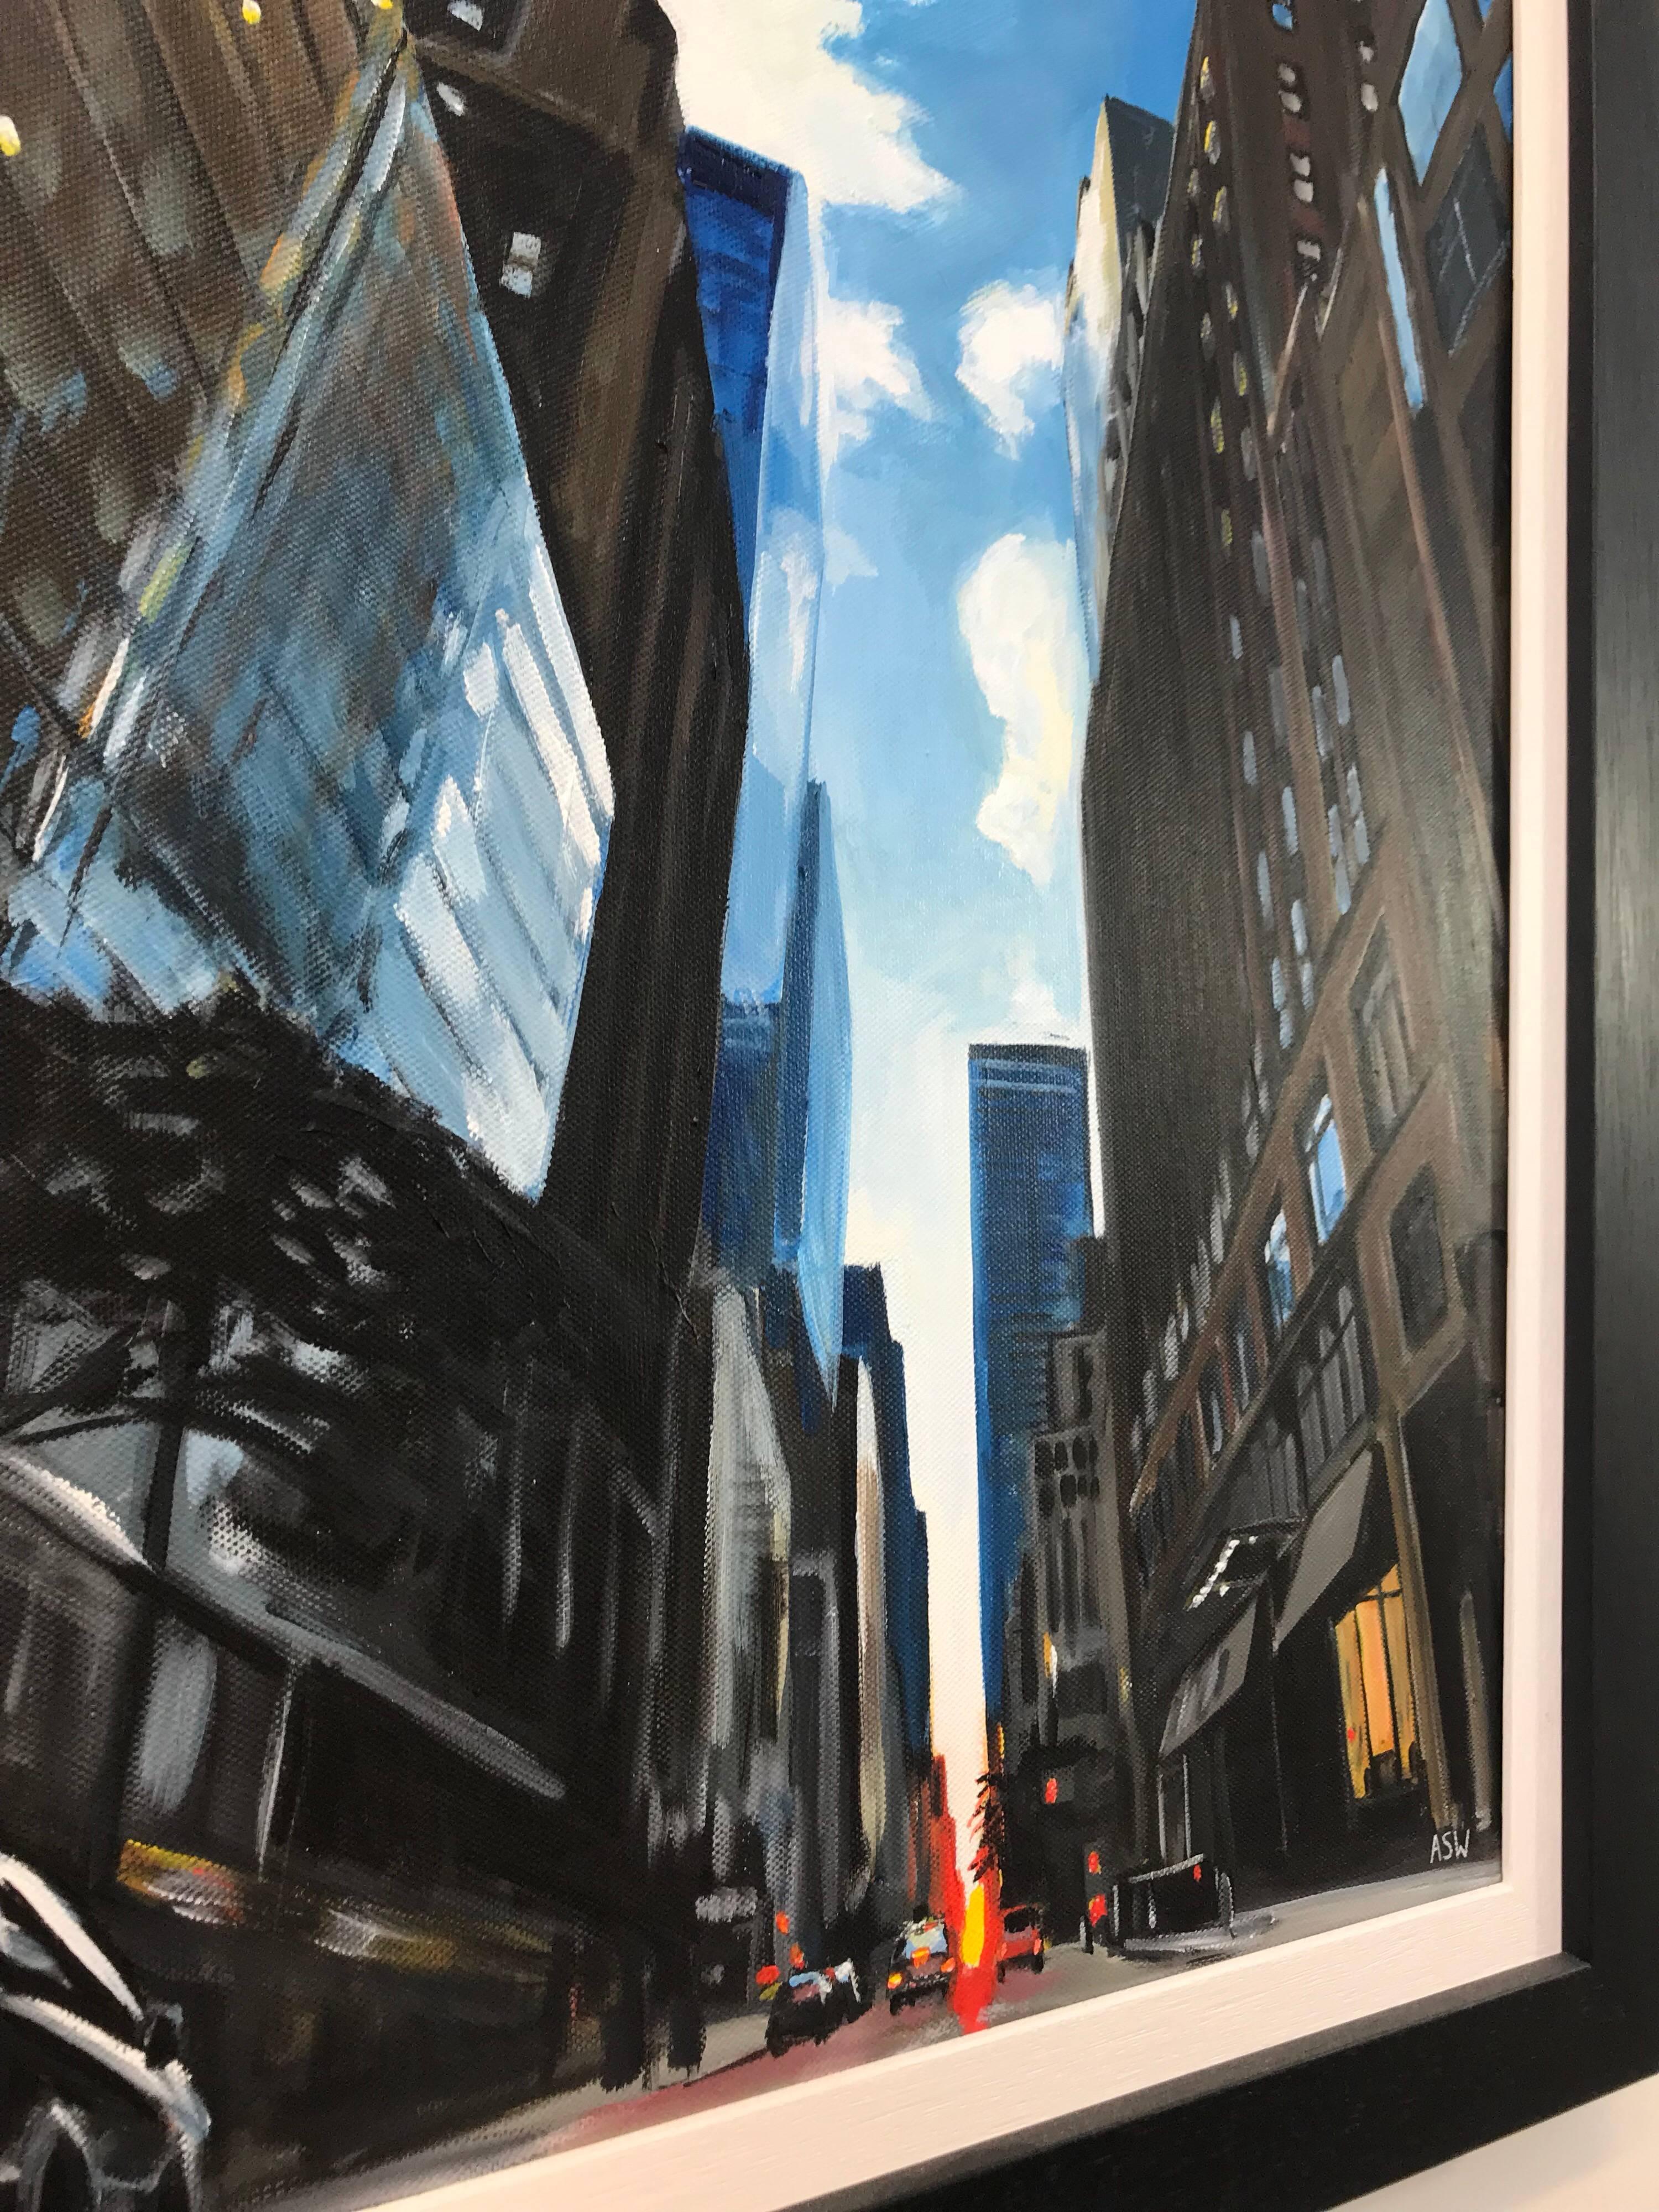 Gemälde eines Sommer-Sonnenuntergangs in New York City von einem führenden britischen Urban Artist UK. Dieses einzigartige Original veranschaulicht das Ausmaß der New Yorker Architektur durch eine einzigartige Perspektive vom Straßenniveau aus.